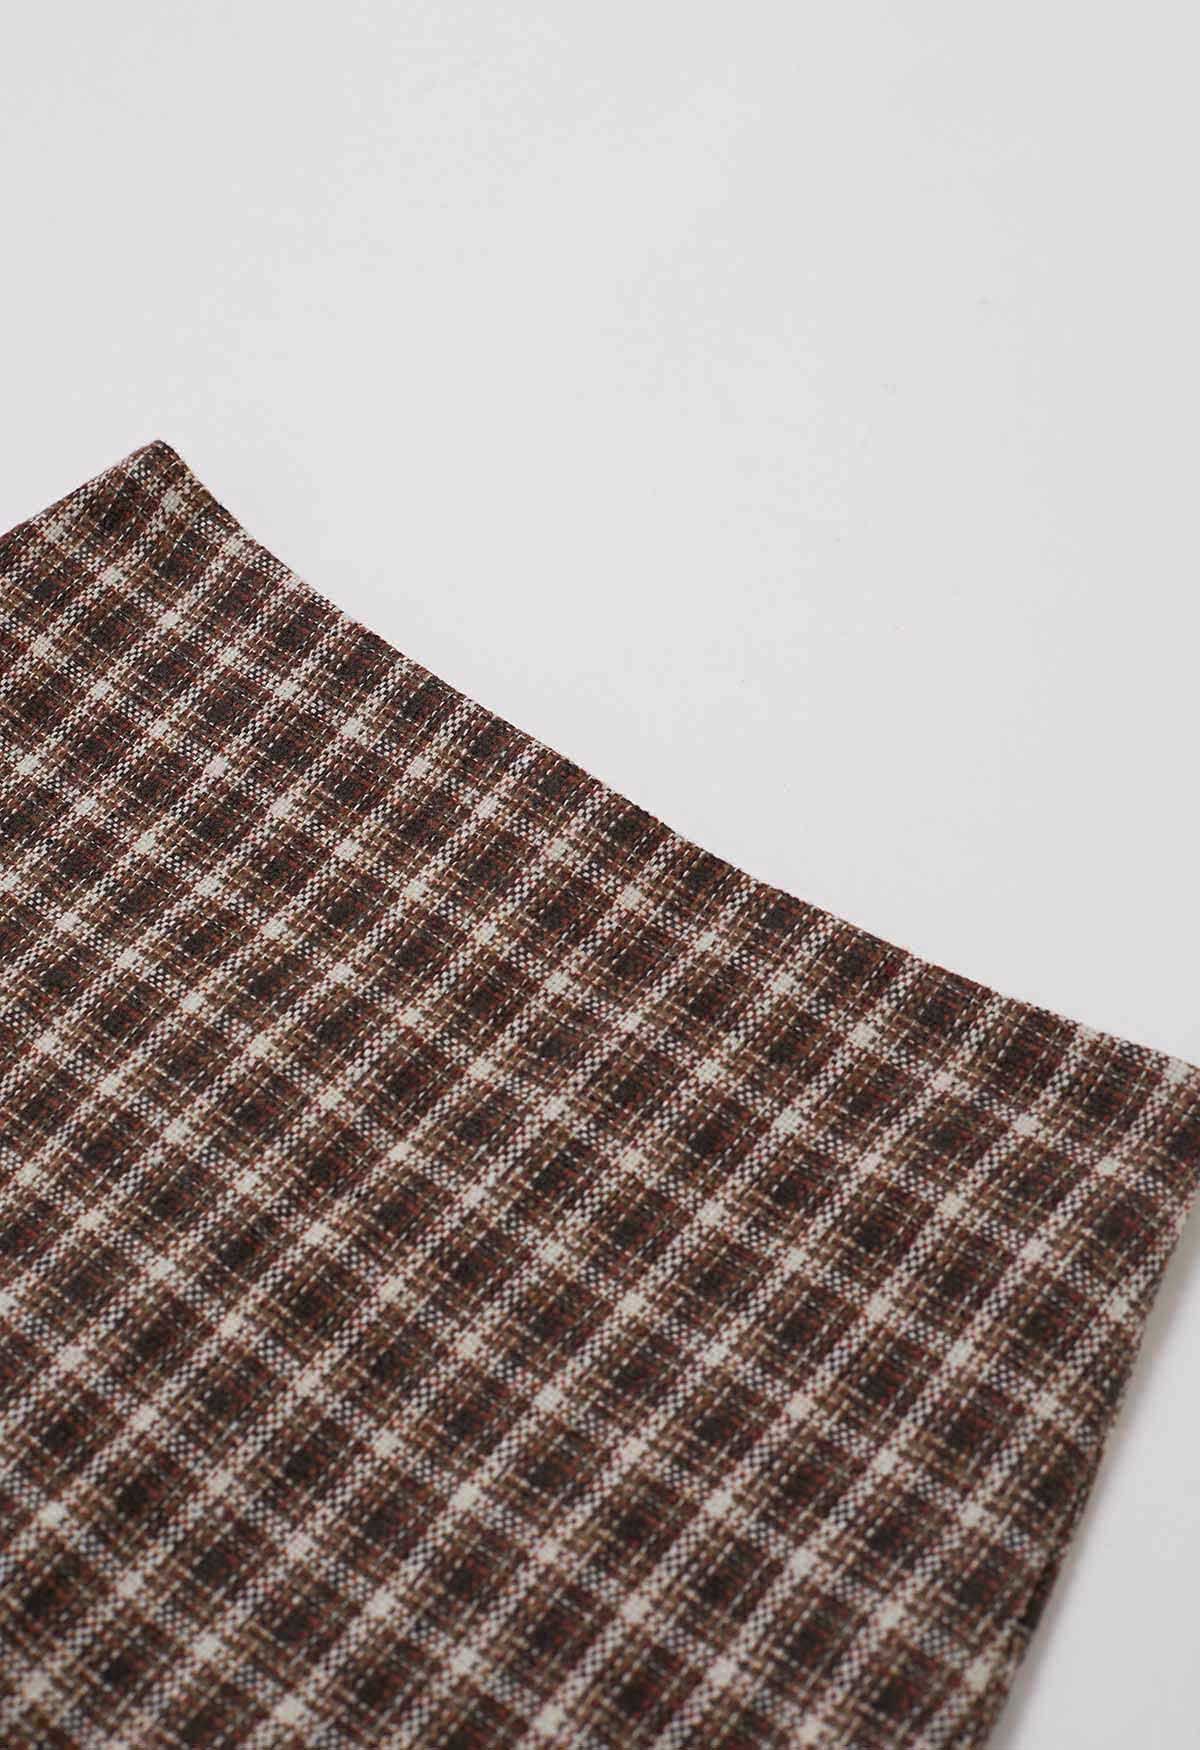 Minifalda de tweed a cuadros con dobladillo con muesca en marrón